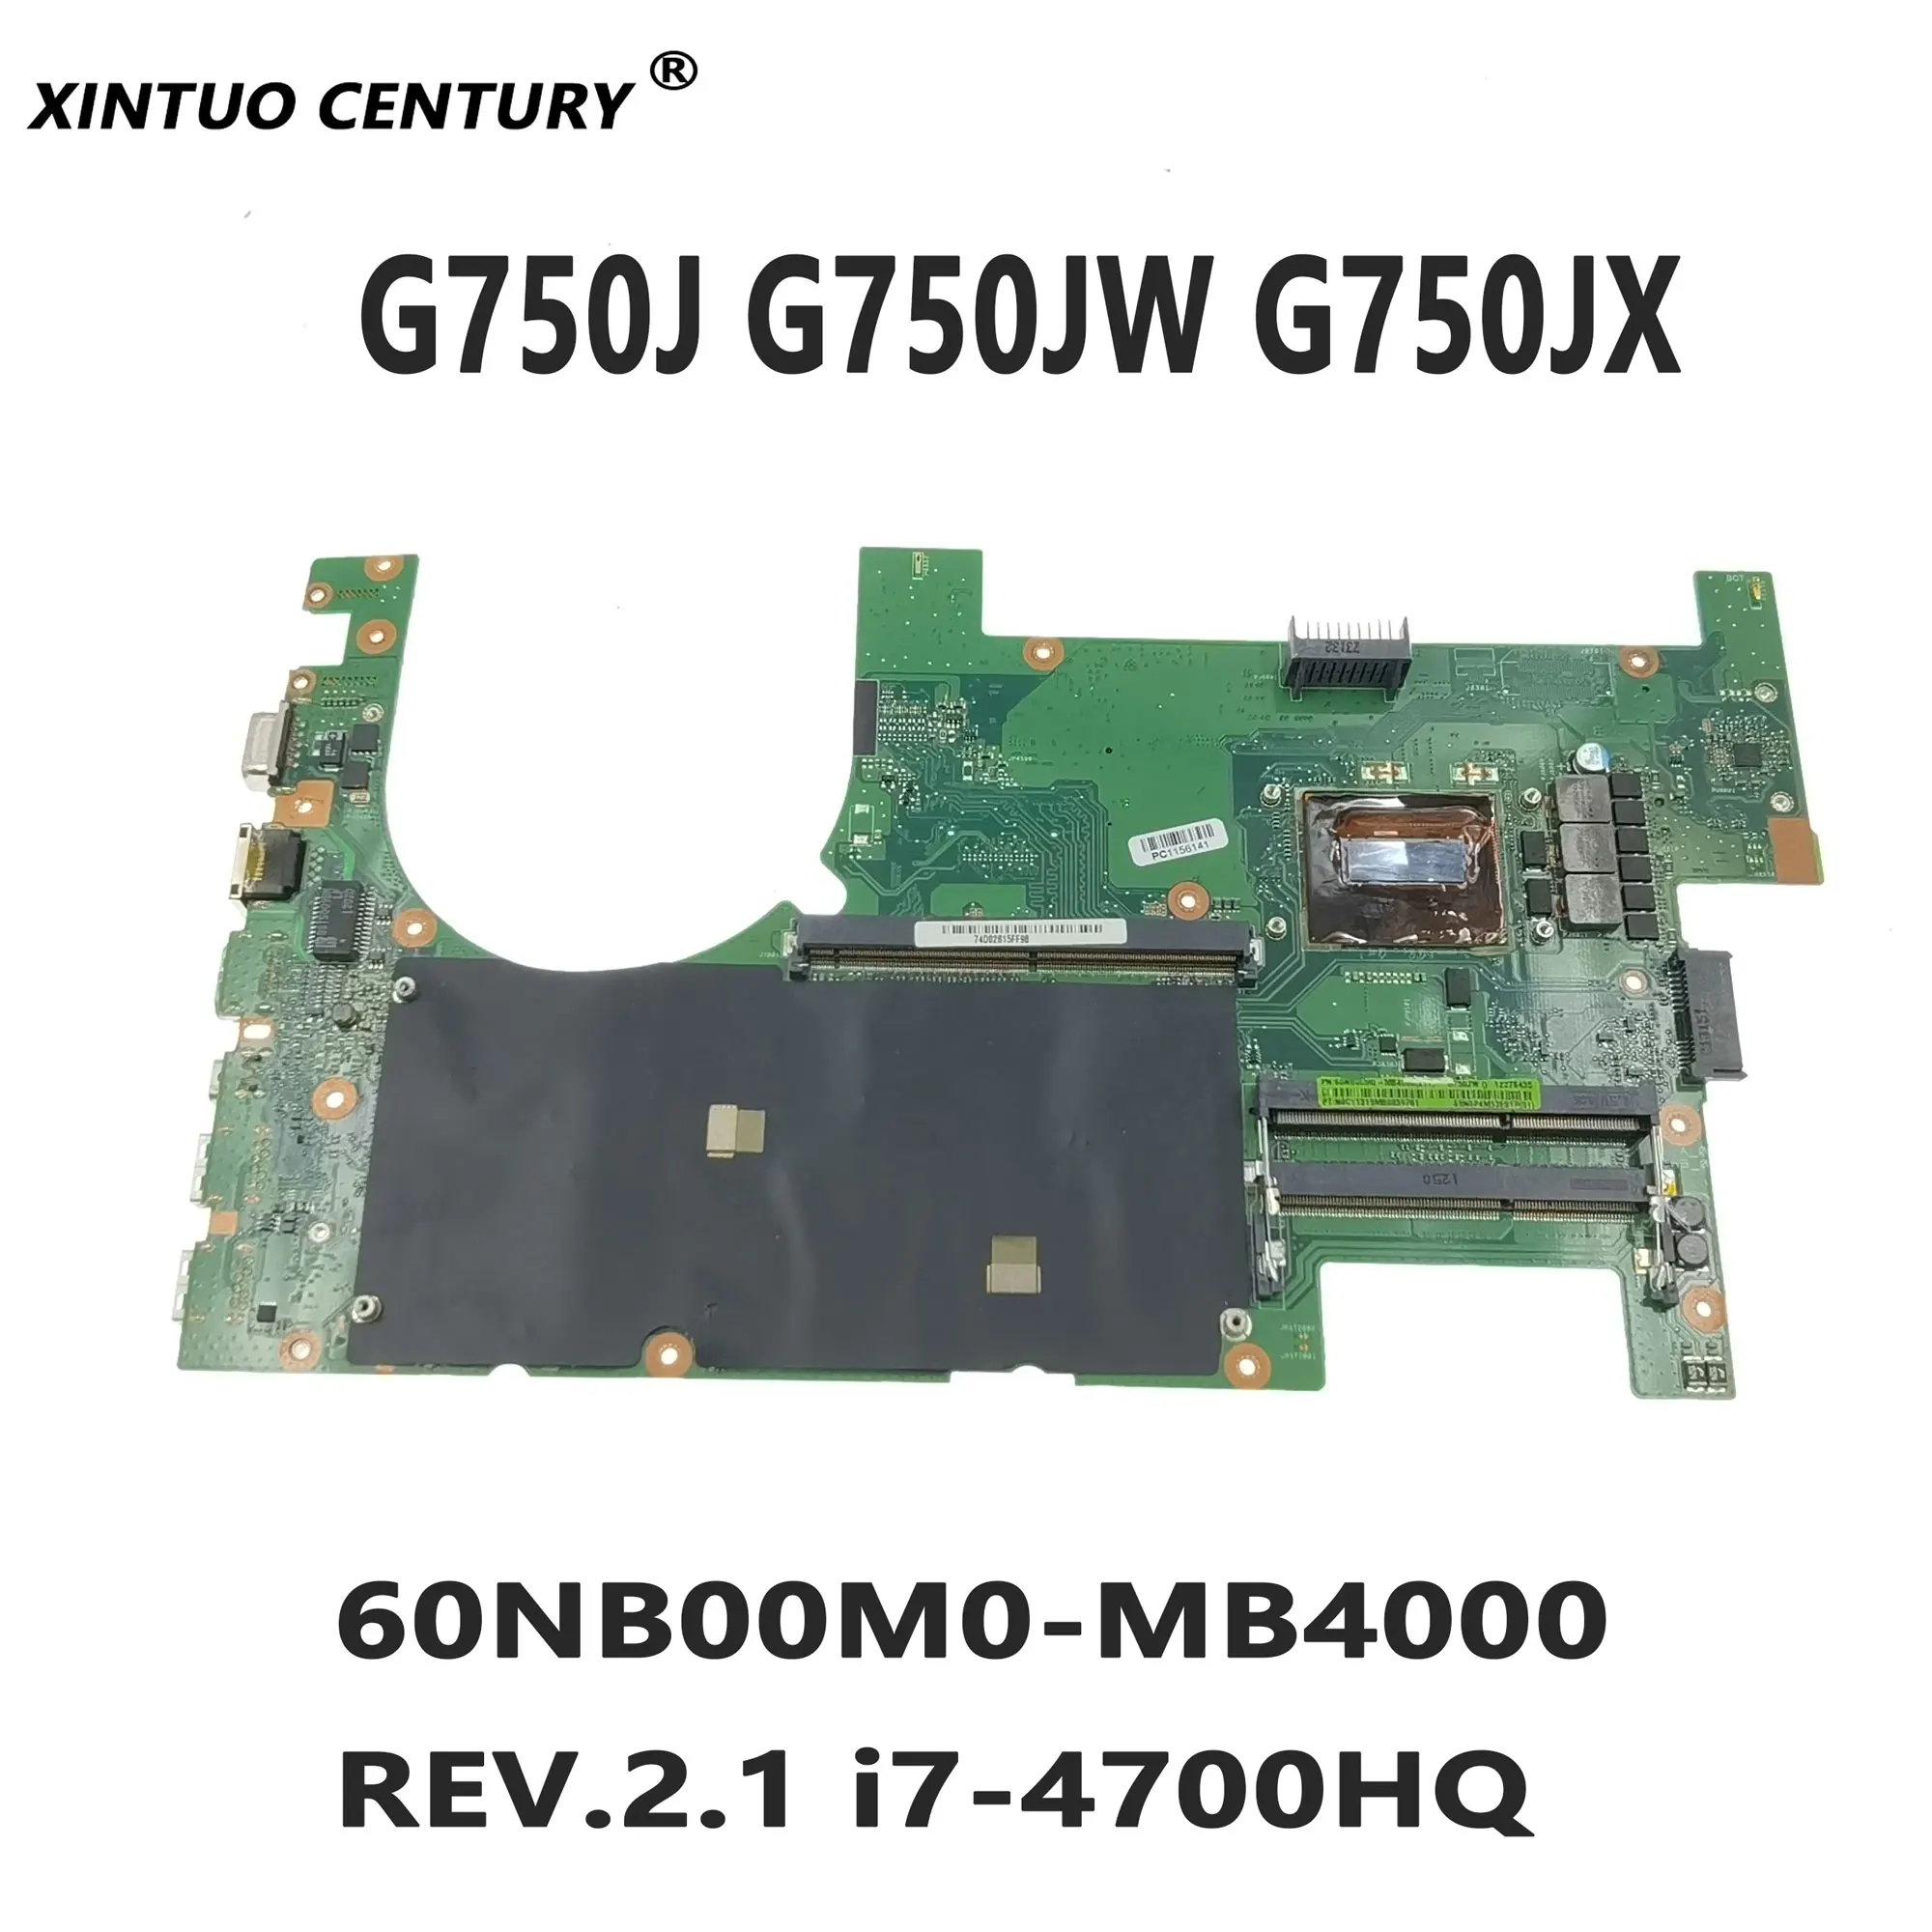 

2D or 3G750JW motherboard for ASUS G750J G750JW G750JX laptop motherboard 60NB00M0-MB4000 REV.2.1 i7-4700HQ CPU 100% test work